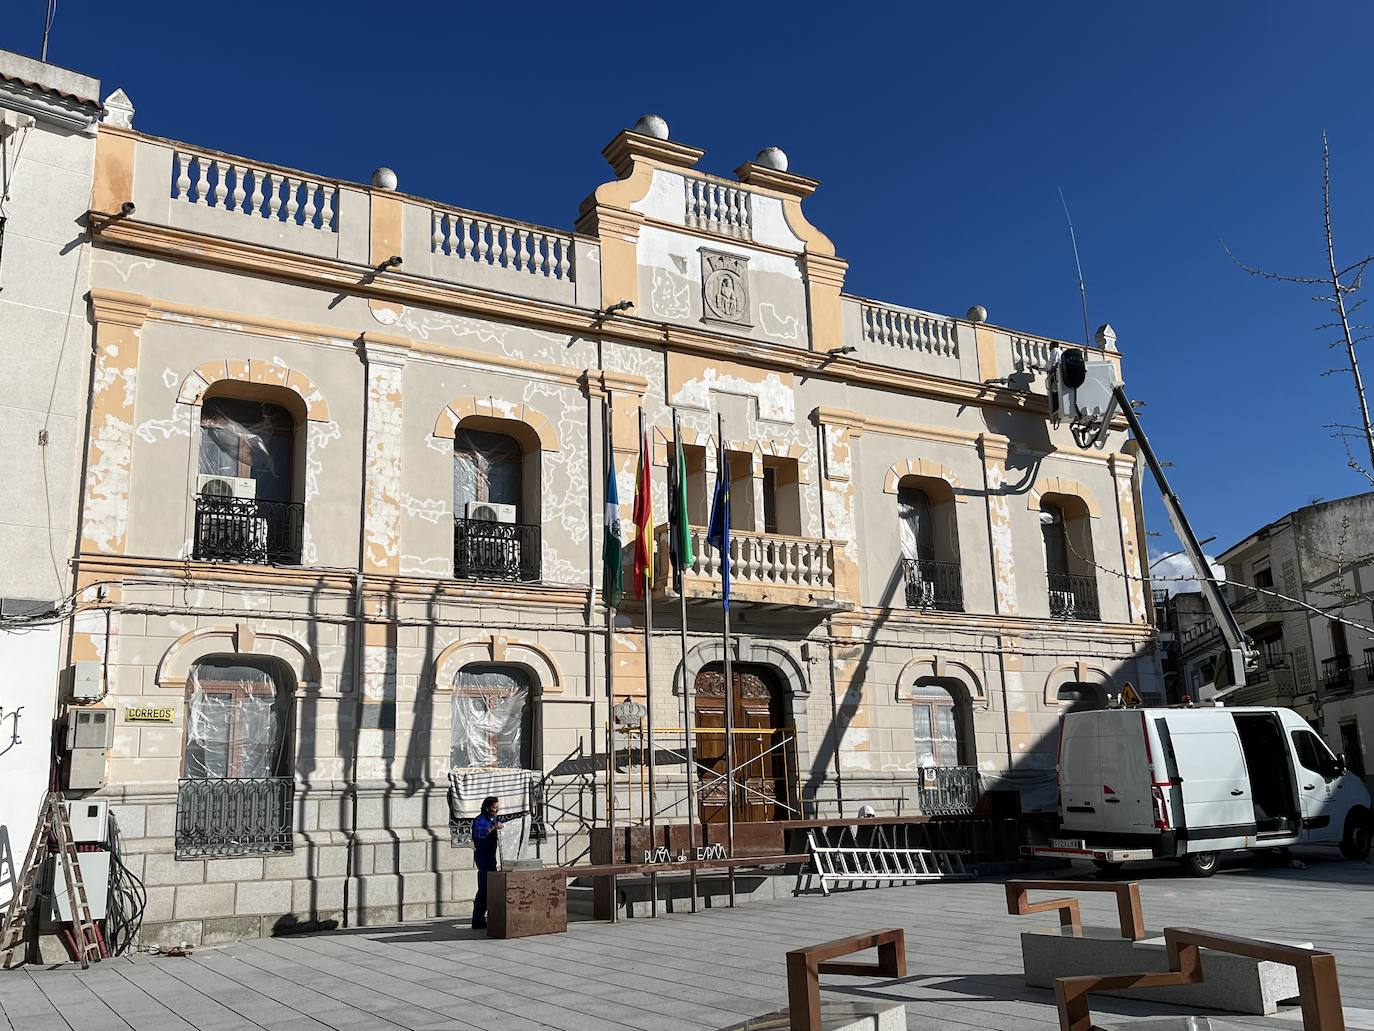 El edificio del ayuntamiento lucirá un aspecto renovado tras pintar la fachada